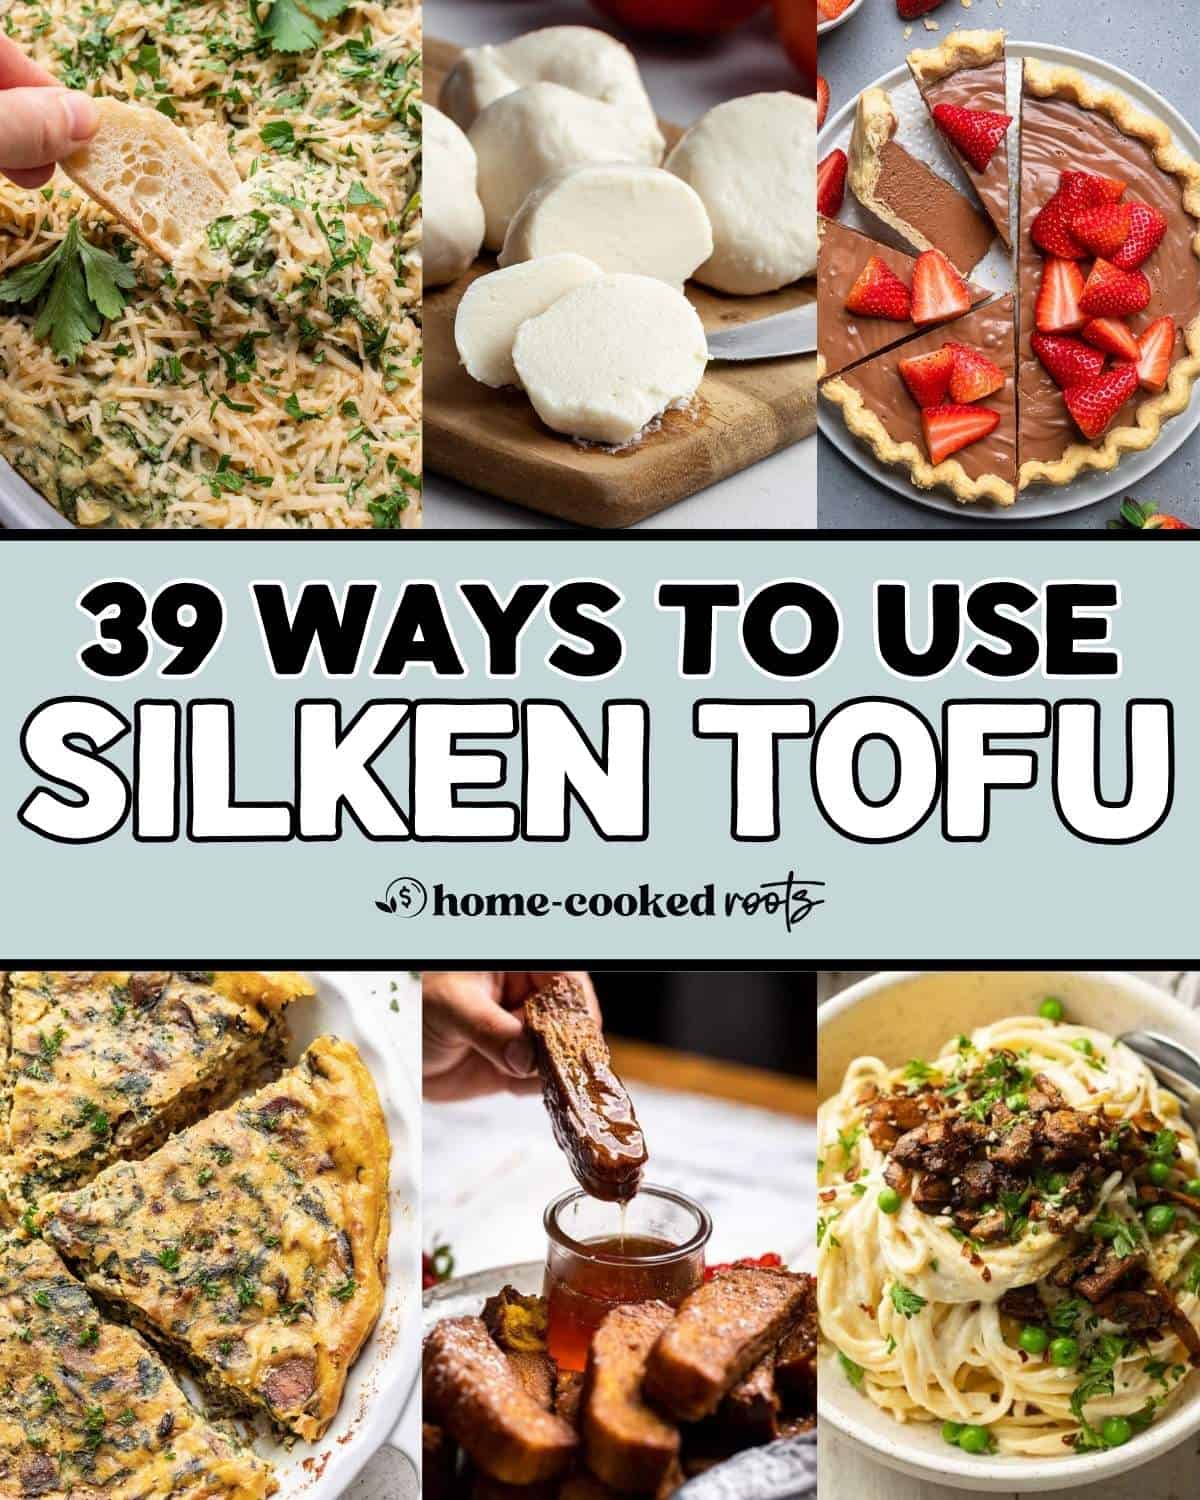 Collage of 6 recipes using silken tofu.